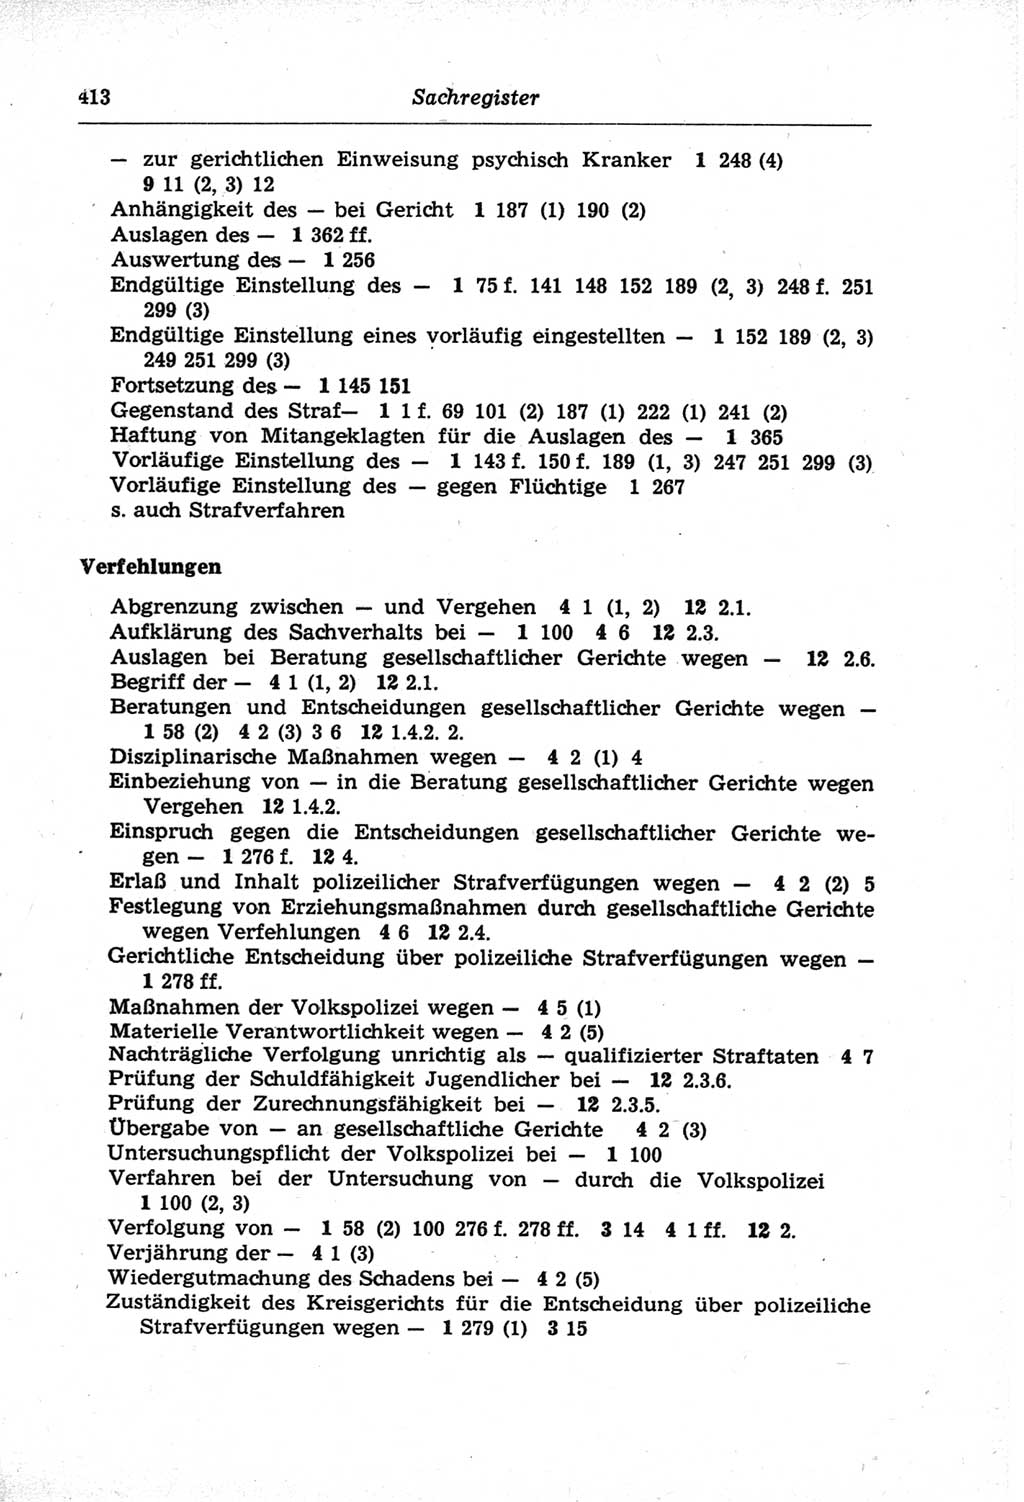 Strafprozeßordnung (StPO) der Deutschen Demokratischen Republik (DDR) und angrenzende Gesetze und Bestimmungen 1968, Seite 413 (StPO Ges. Bstgn. DDR 1968, S. 413)